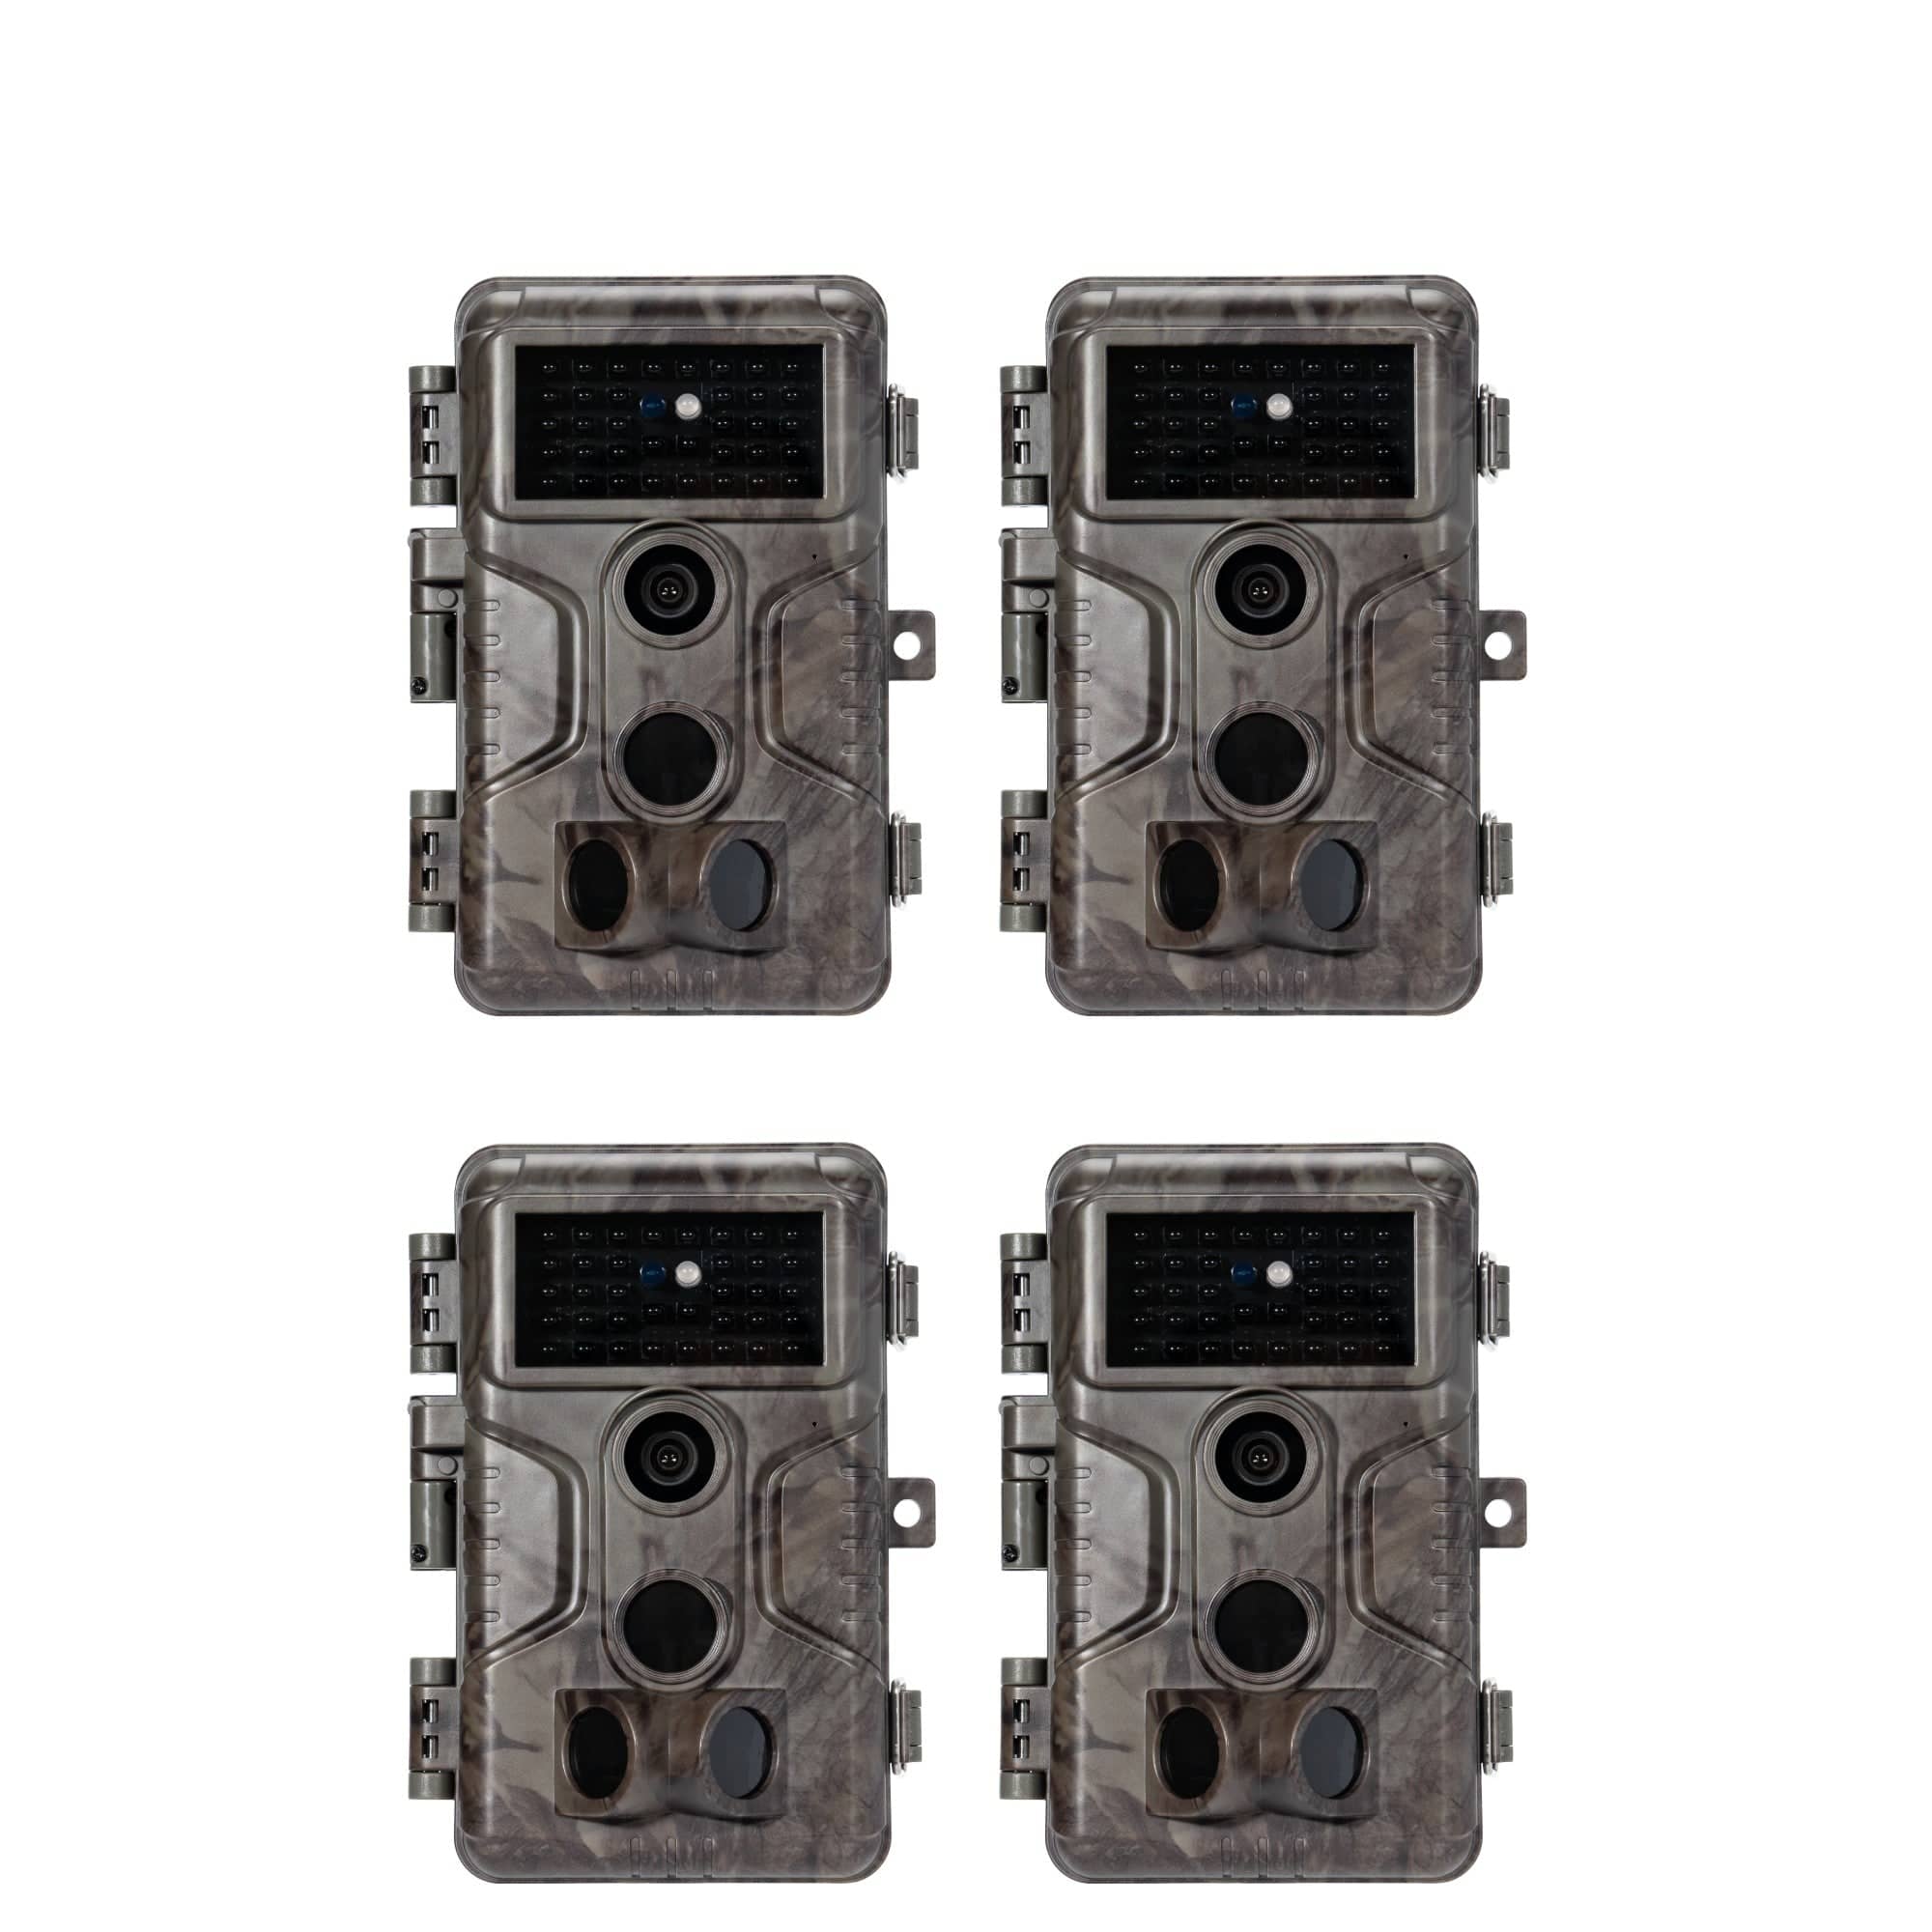 Pack 2 cámaras de caza GardePro A3S con pilas gratis para fototrampeo